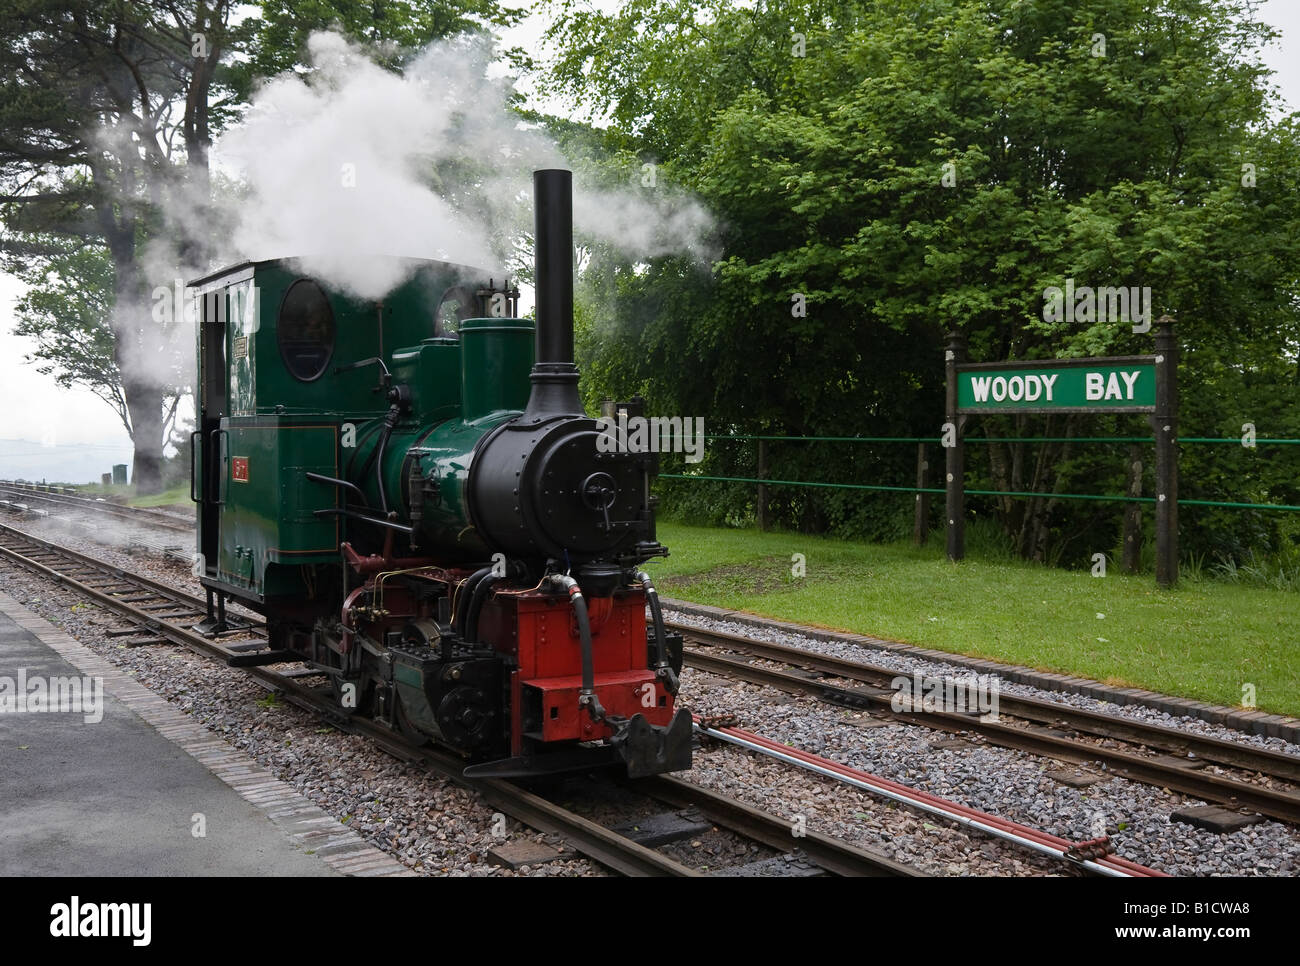 Motore a vapore a Woody Bay stazione, Lynton e Barnstaple Railway, Devon, Inghilterra, Regno Unito Foto Stock